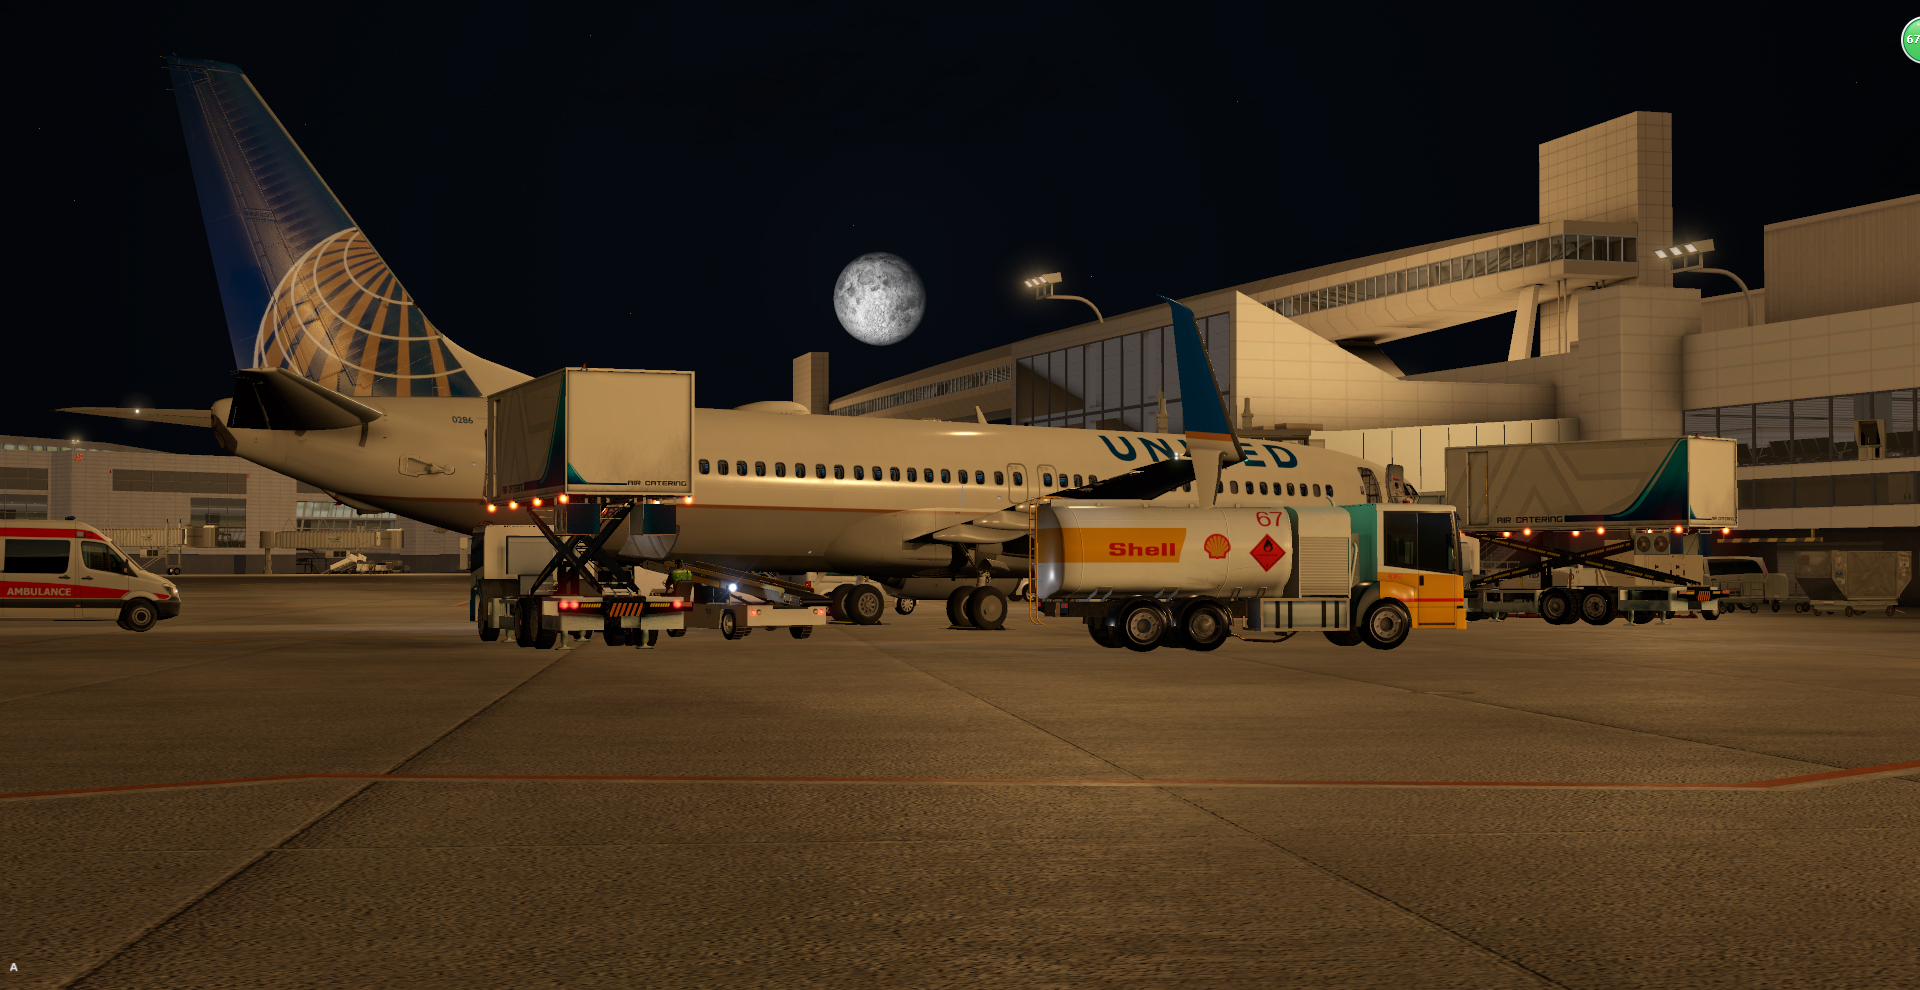 深夜降落—塔科马国际机场-1555 